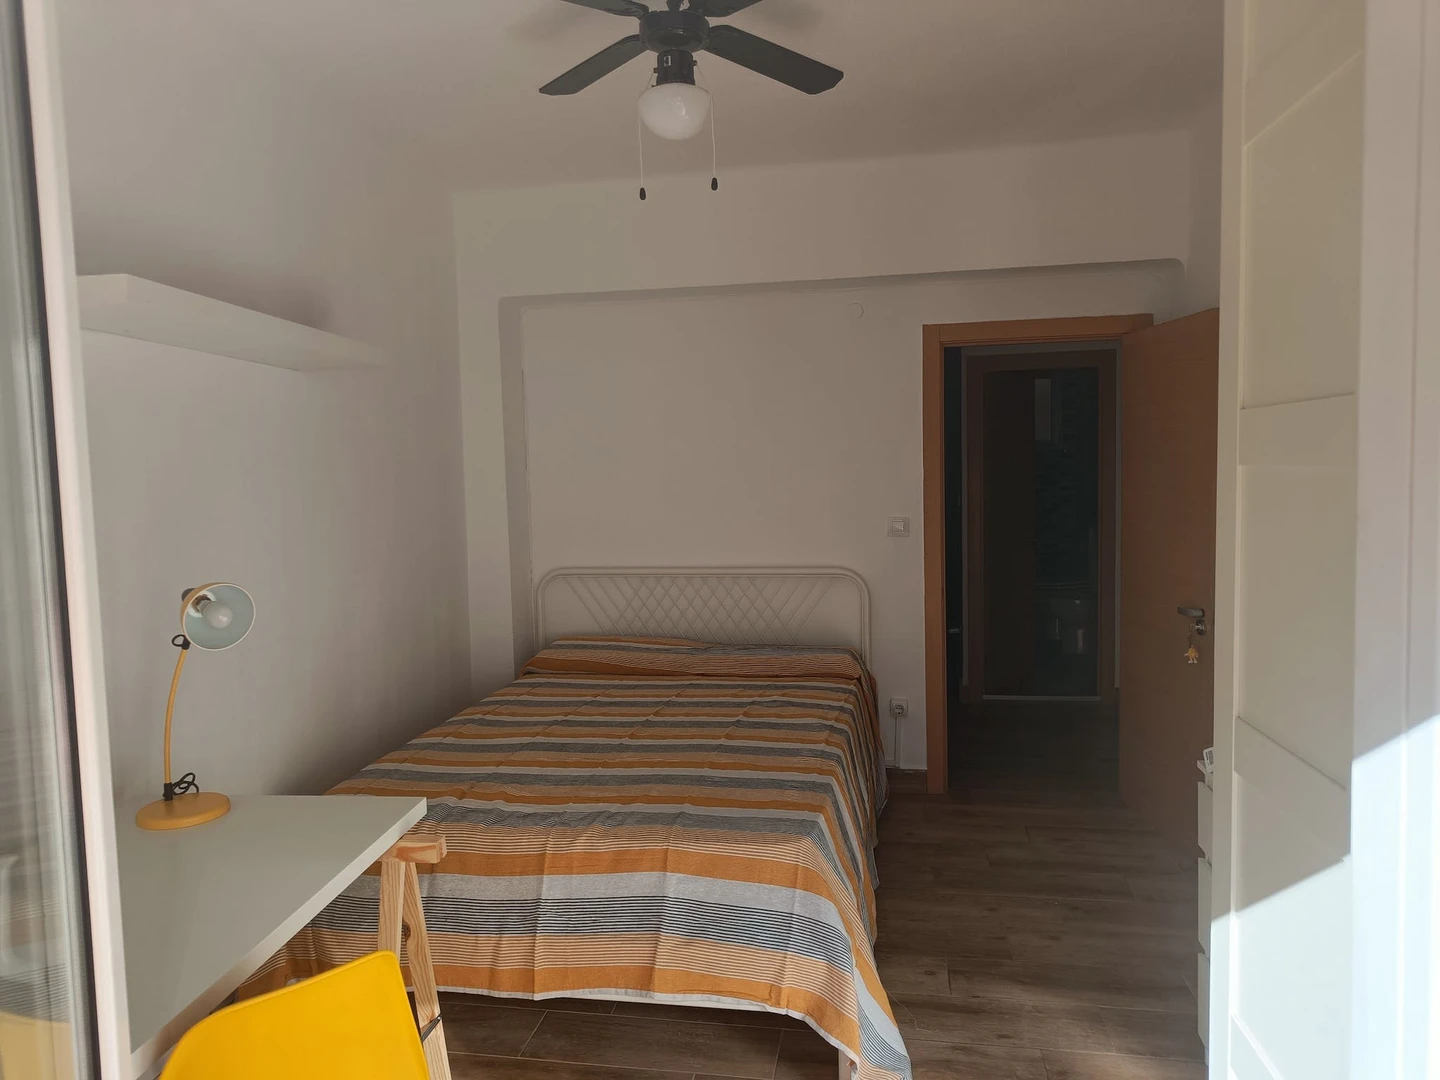 Alquiler de habitaciones por meses en Almería